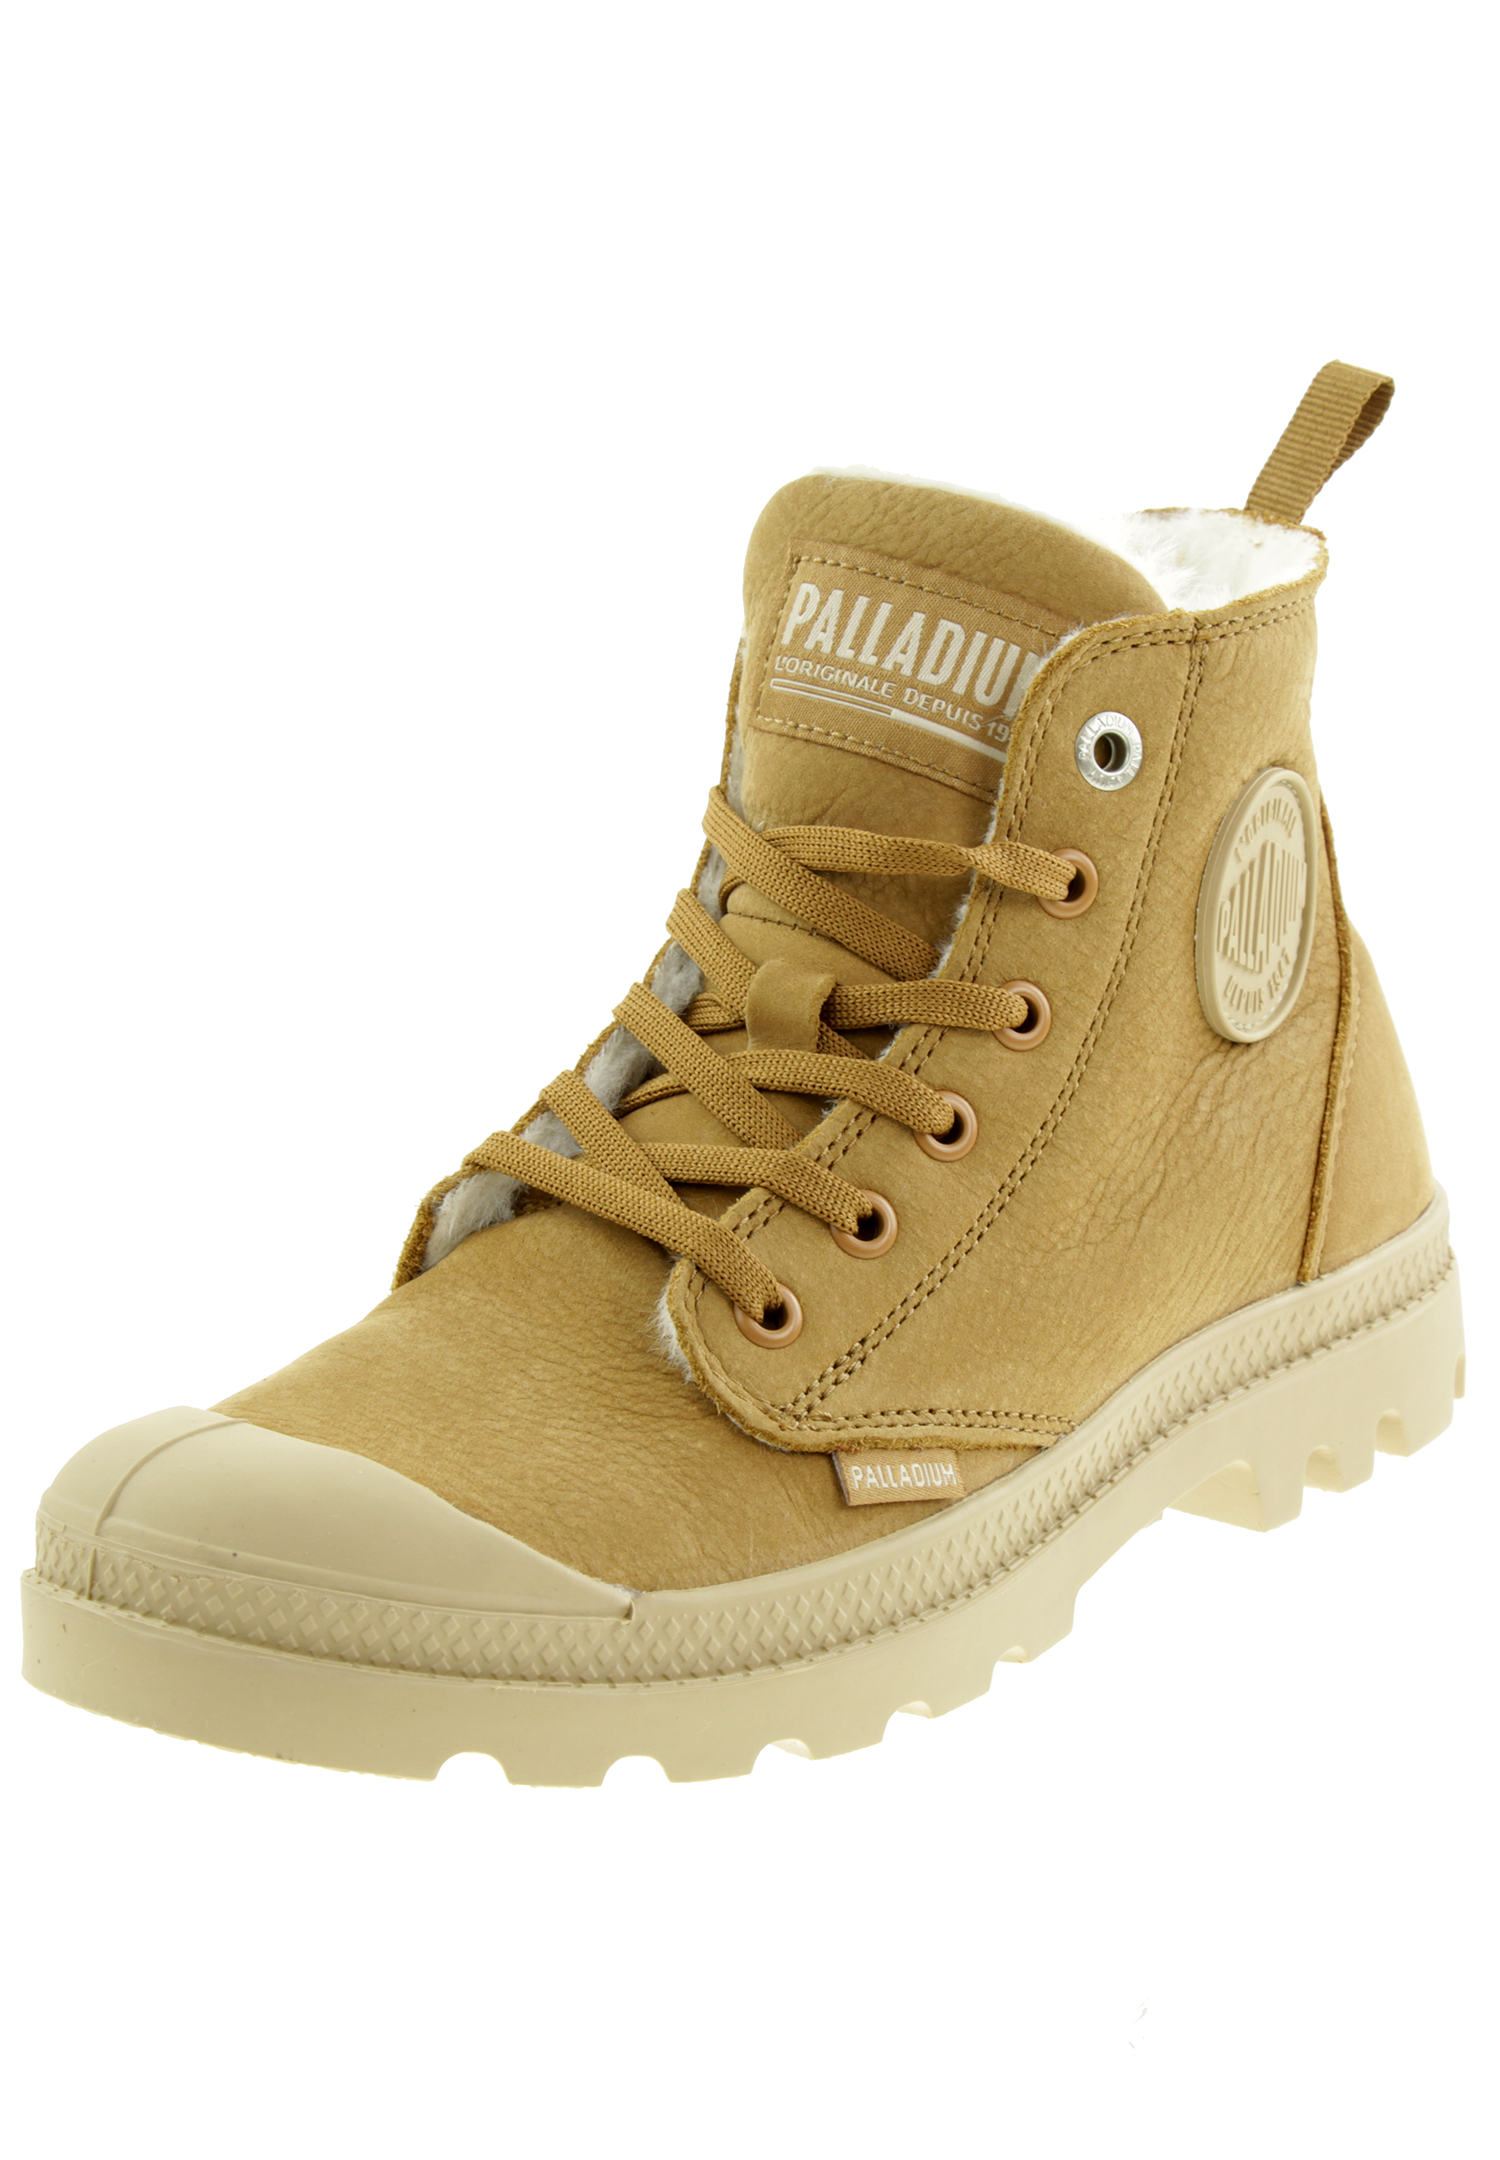 PALLADIUM Damen Pampa Hi Zip WL W Winter Ankle Boots Stiefelette 95982 braun